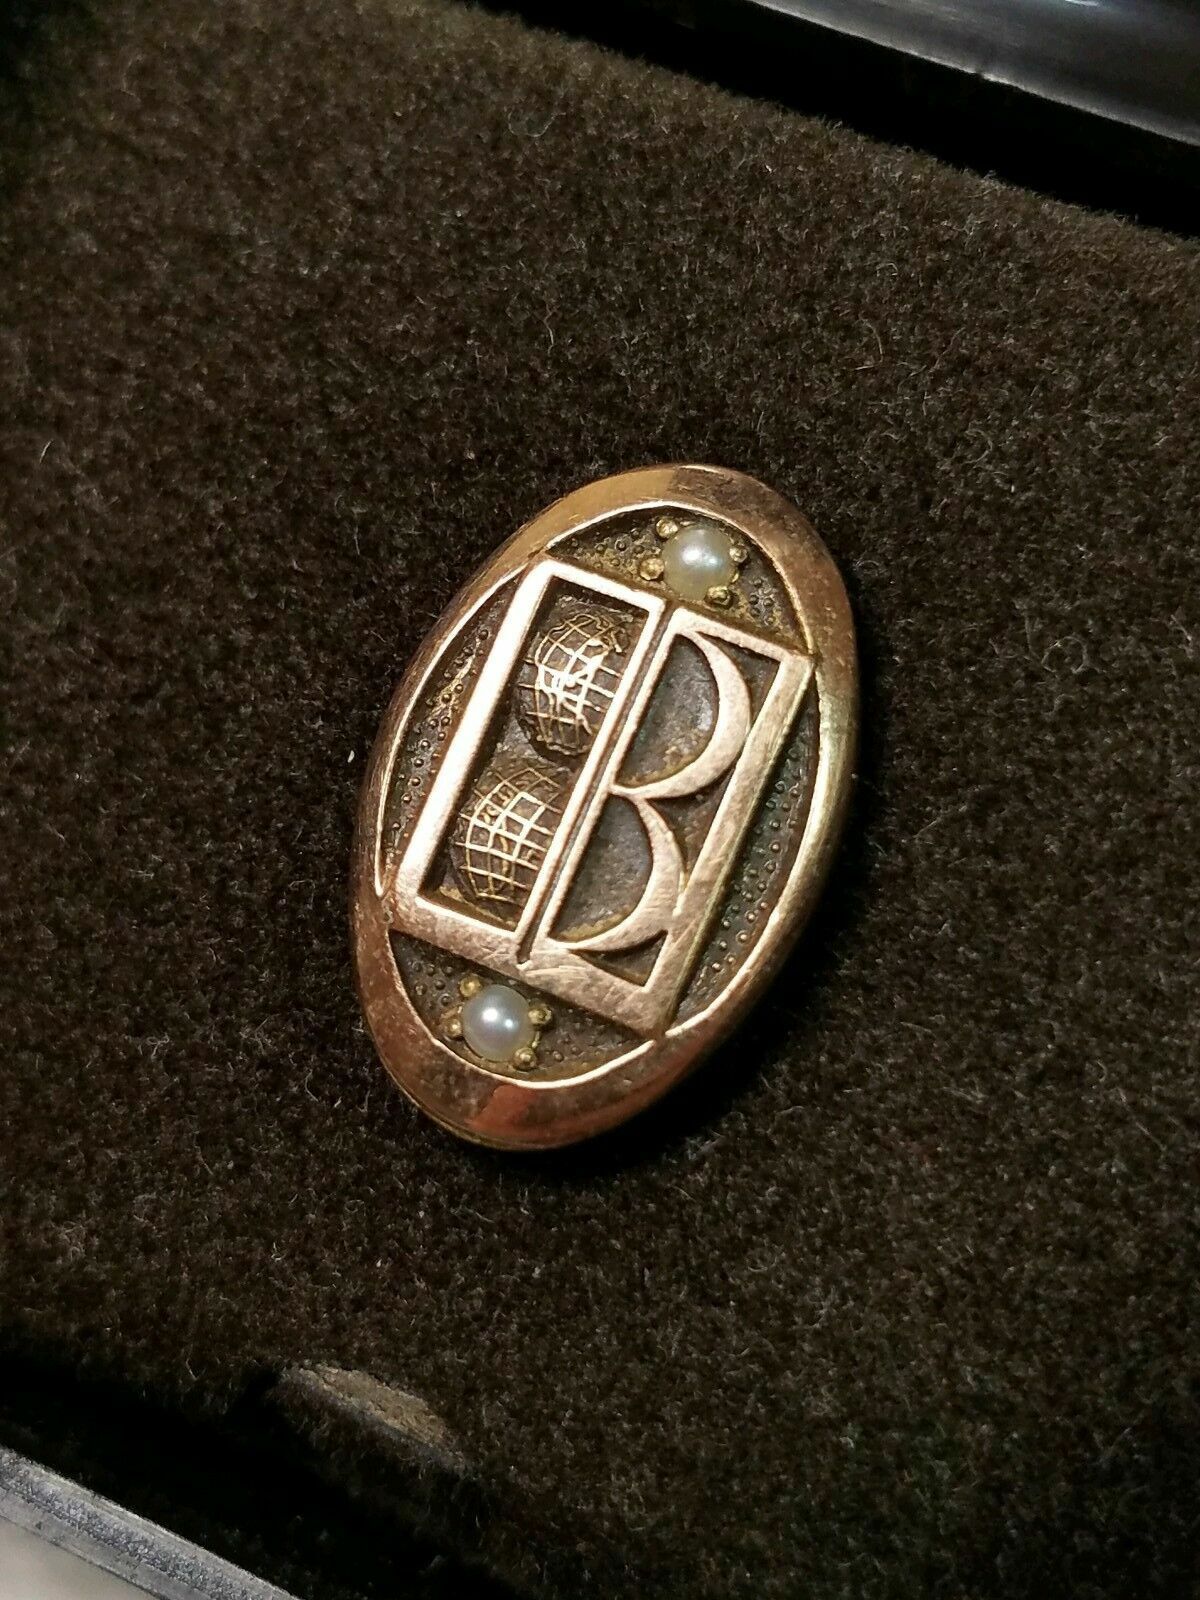 Vintage Balfour Service Award Pin in box 1/10 10k 